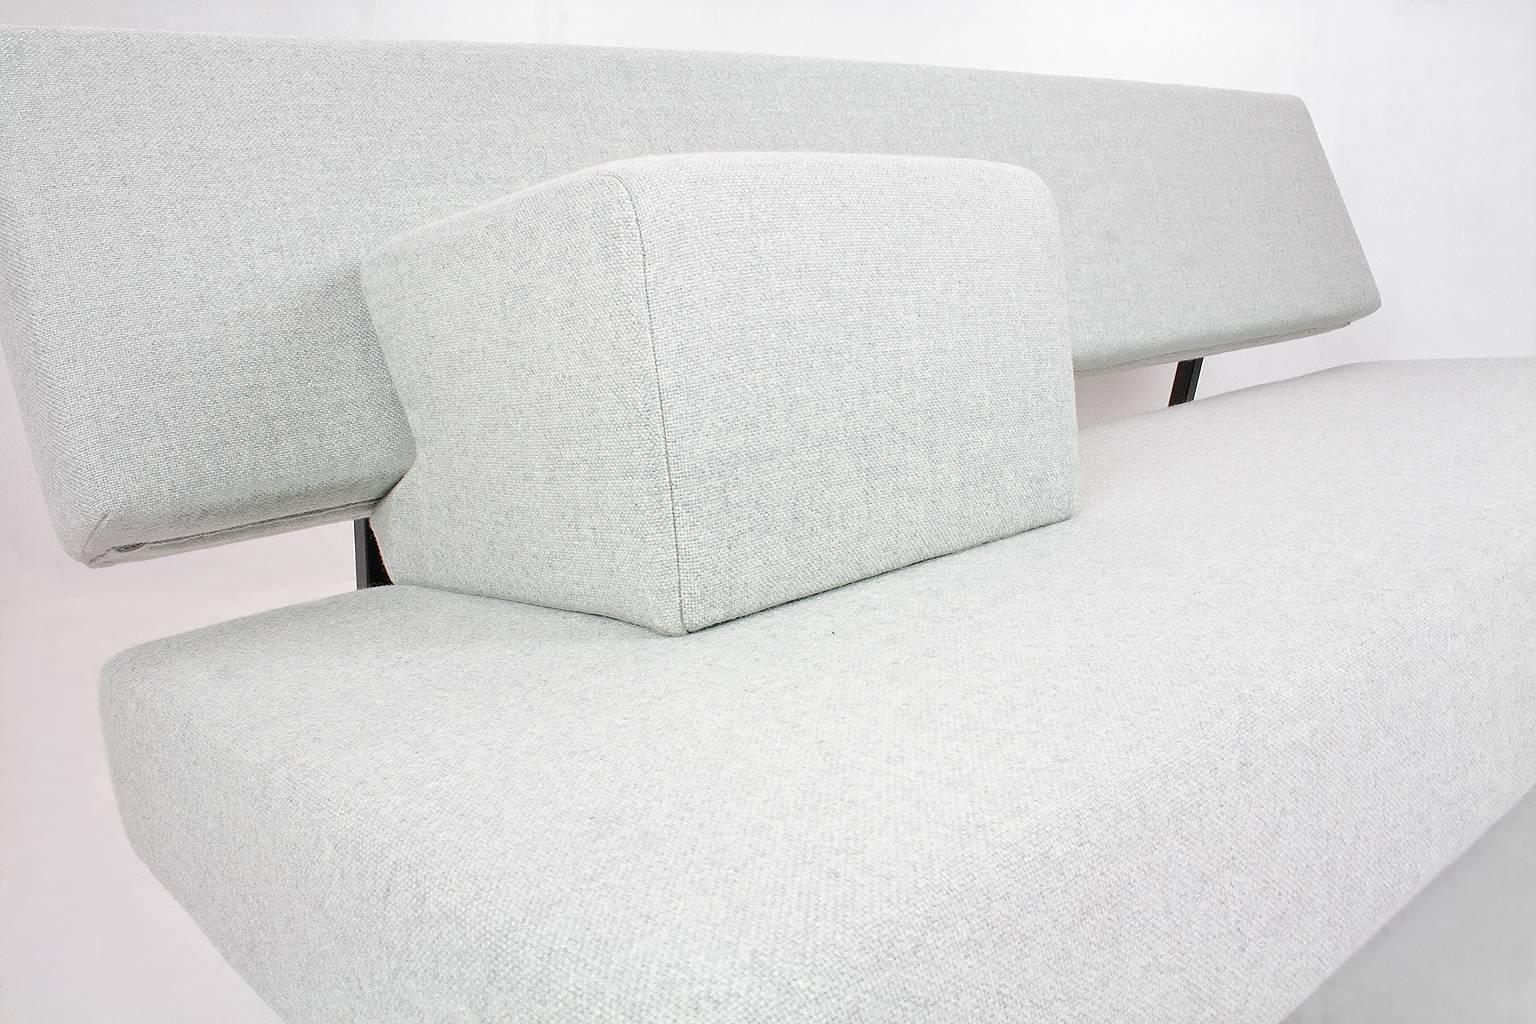 Contemporary 1964 Dutch, Mid-Century Modern BZ53 Sofa by Martin Visser for Spectrum